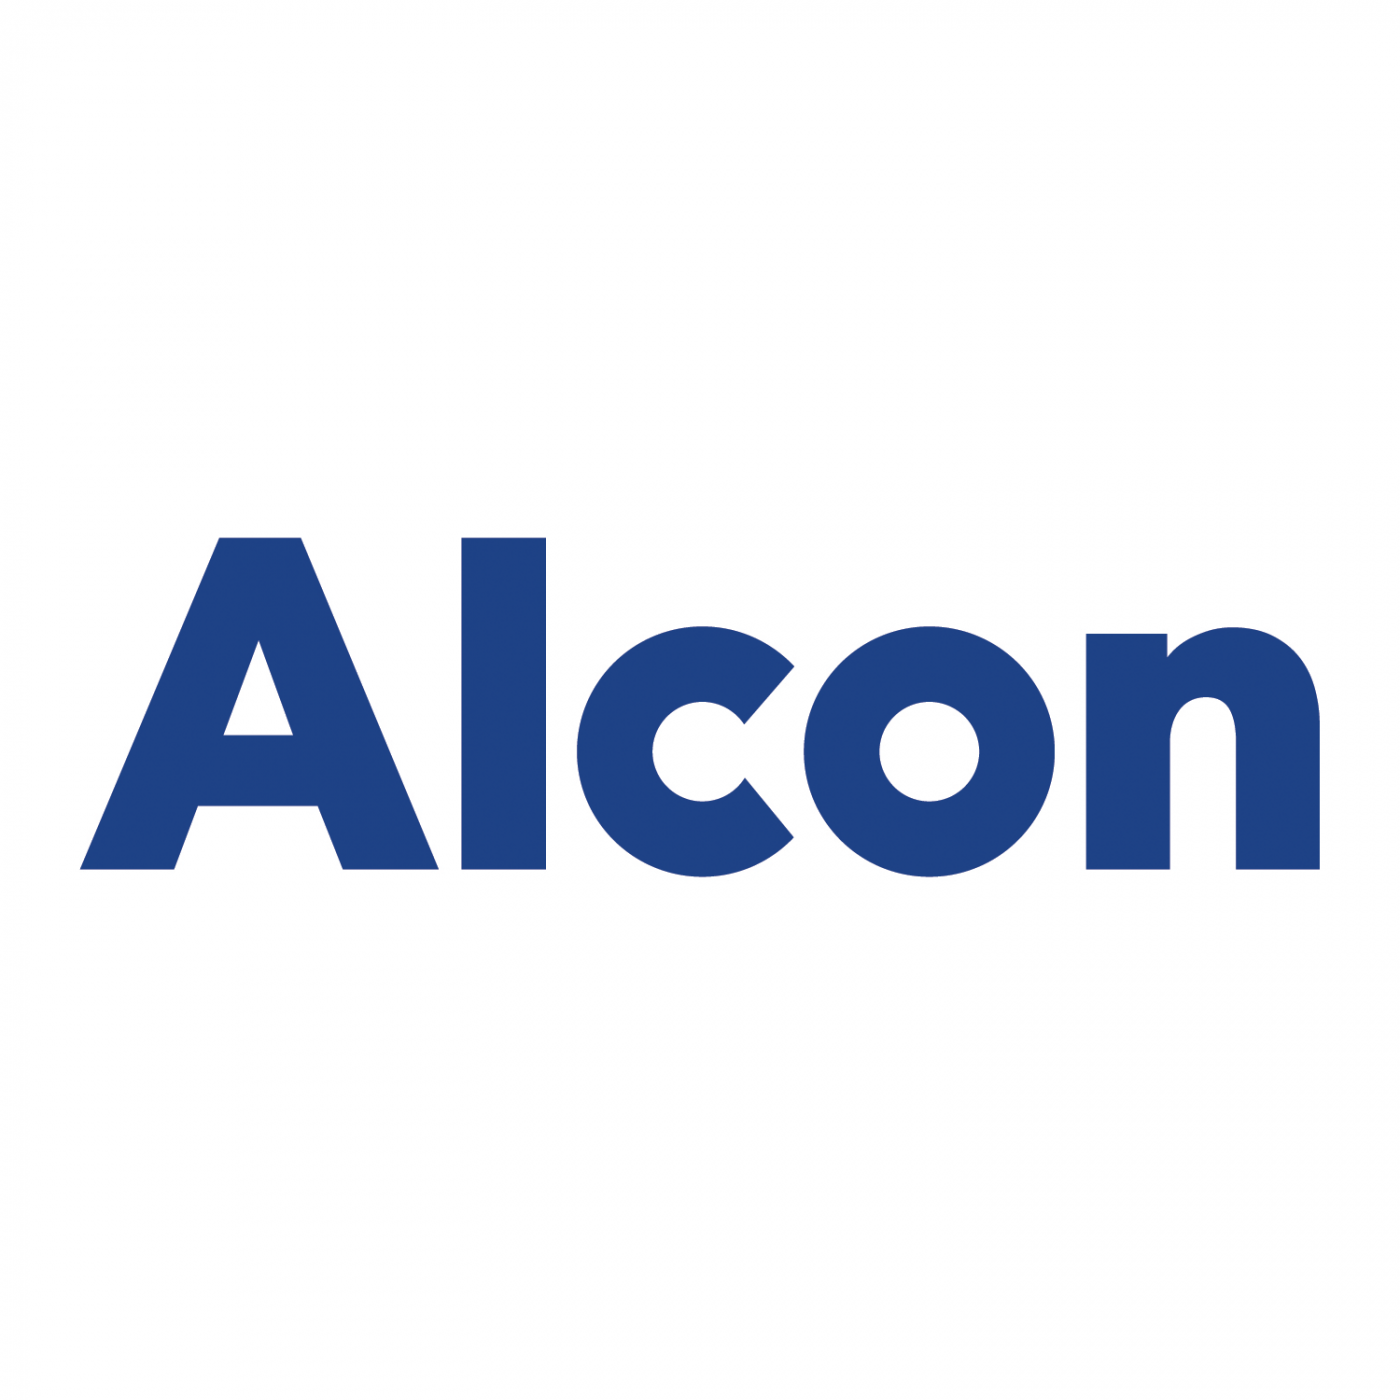 Alcon-logo-2